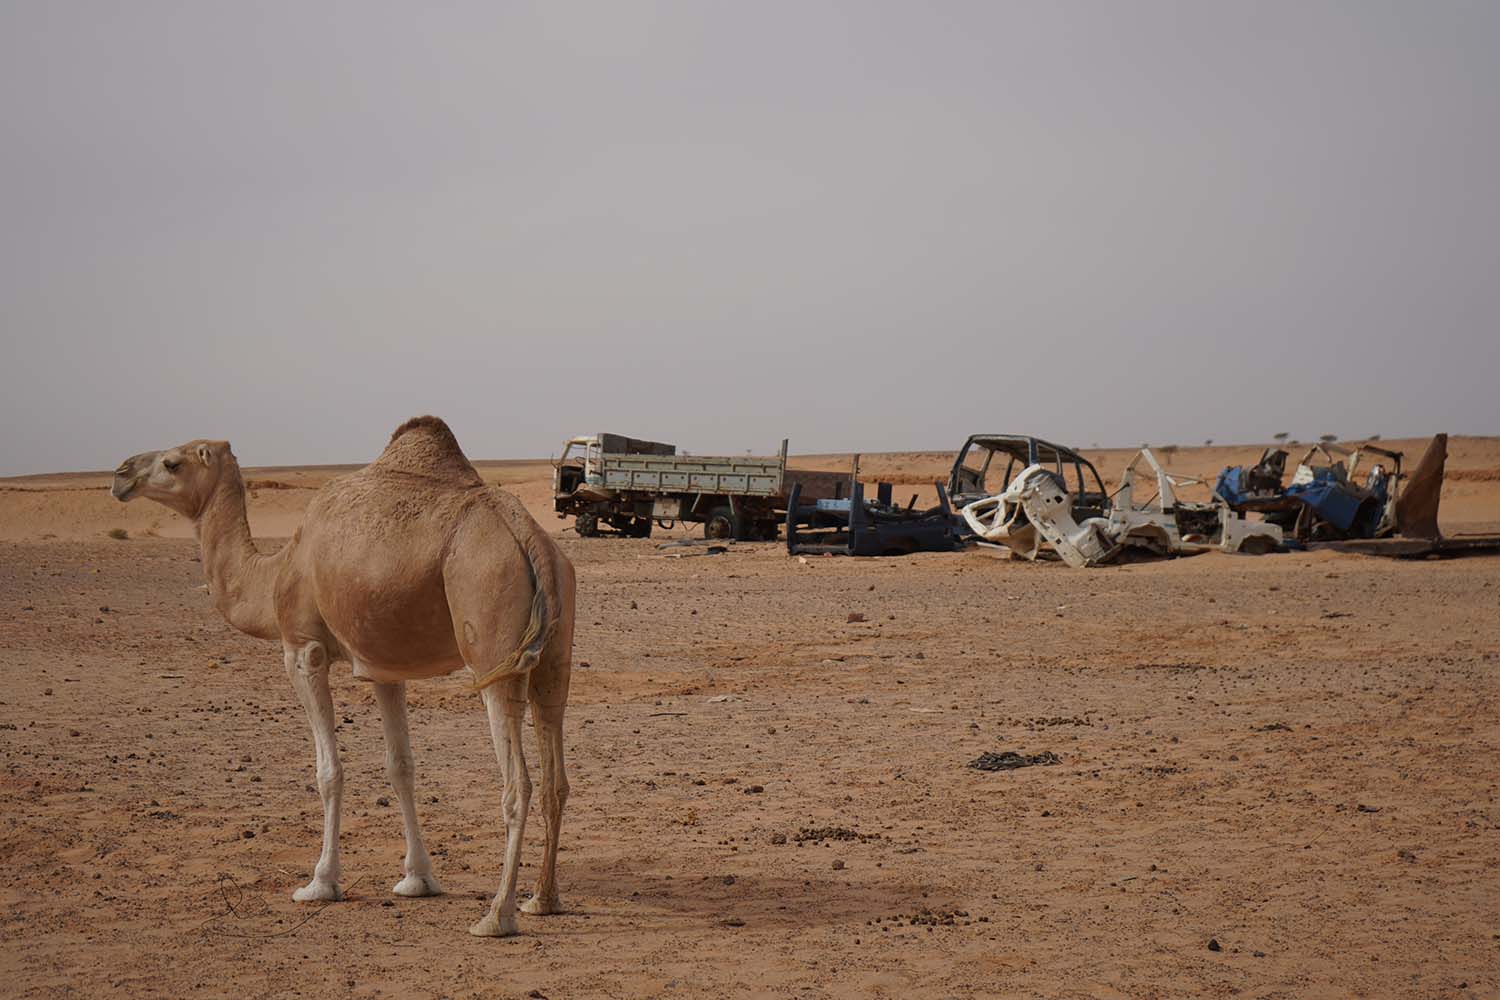 Un camello junto a un montón de coches oxidados cerca de la única carretera asfaltada que atraviesa el rocoso desierto argelino y que une el campamento de Auserd con otros cuatro campamentos de refugiados saharauis el 15 de octubre.